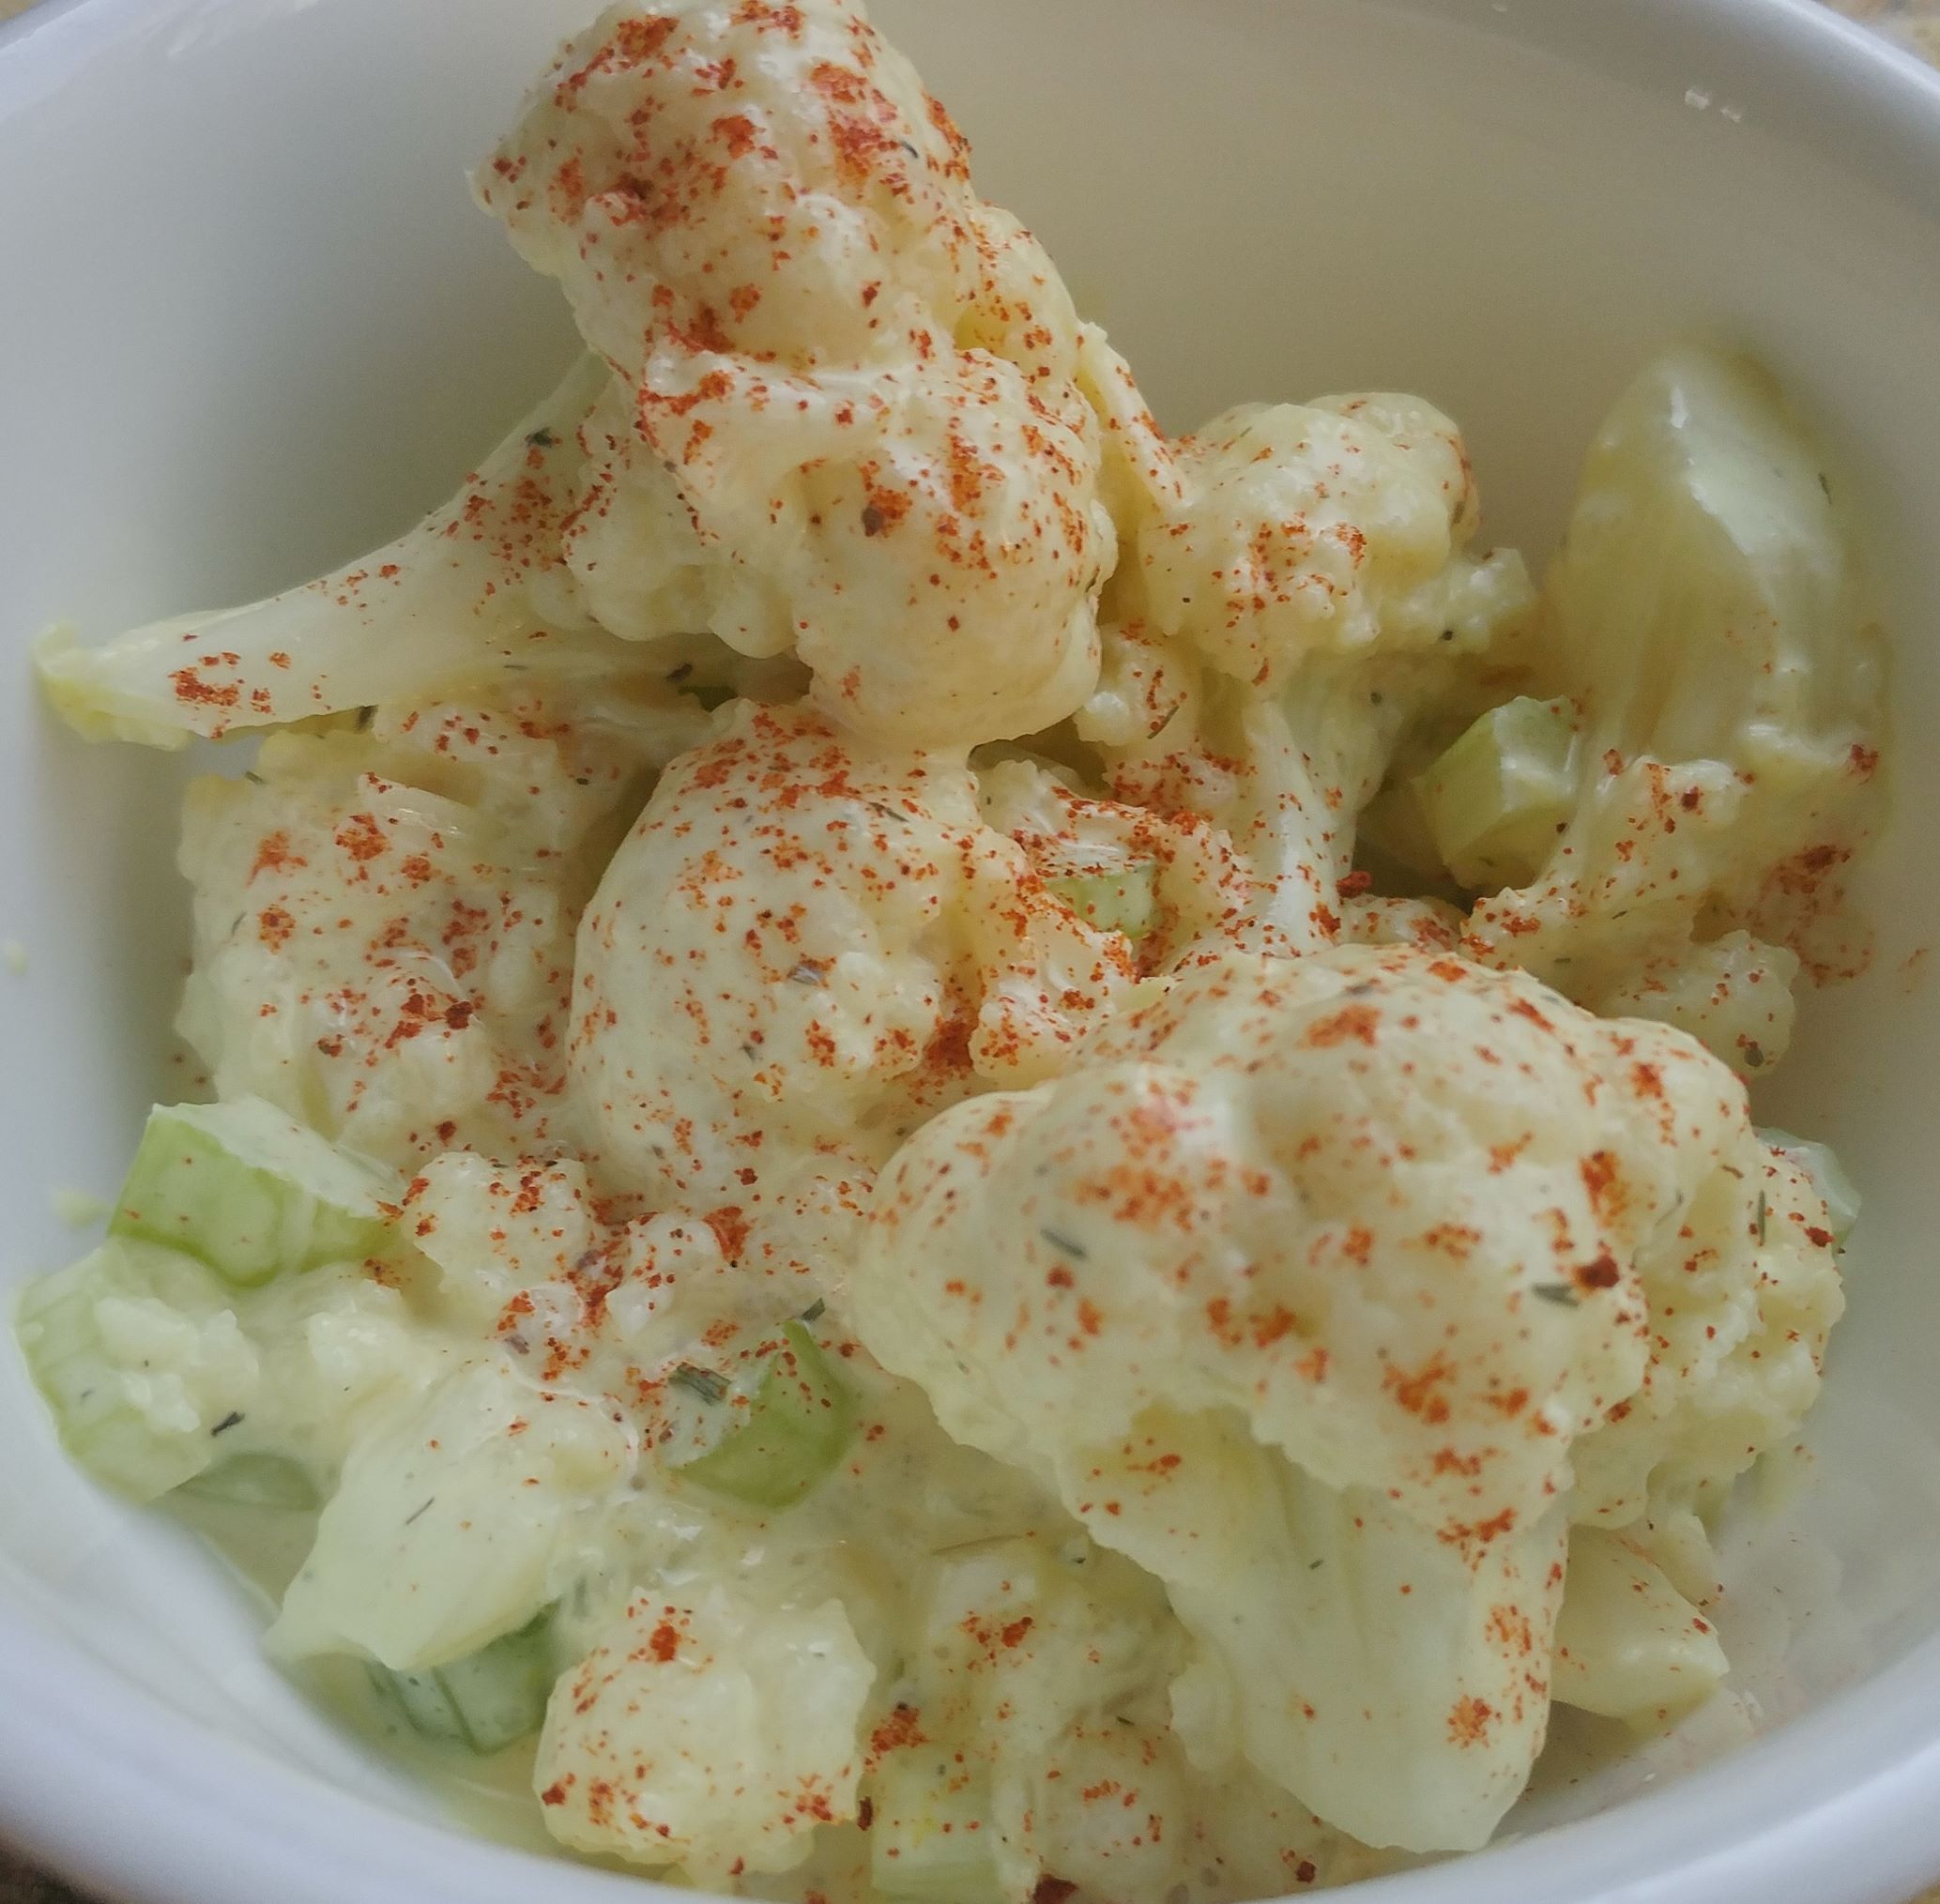 Vegan Cauliflower “Potato” Salad